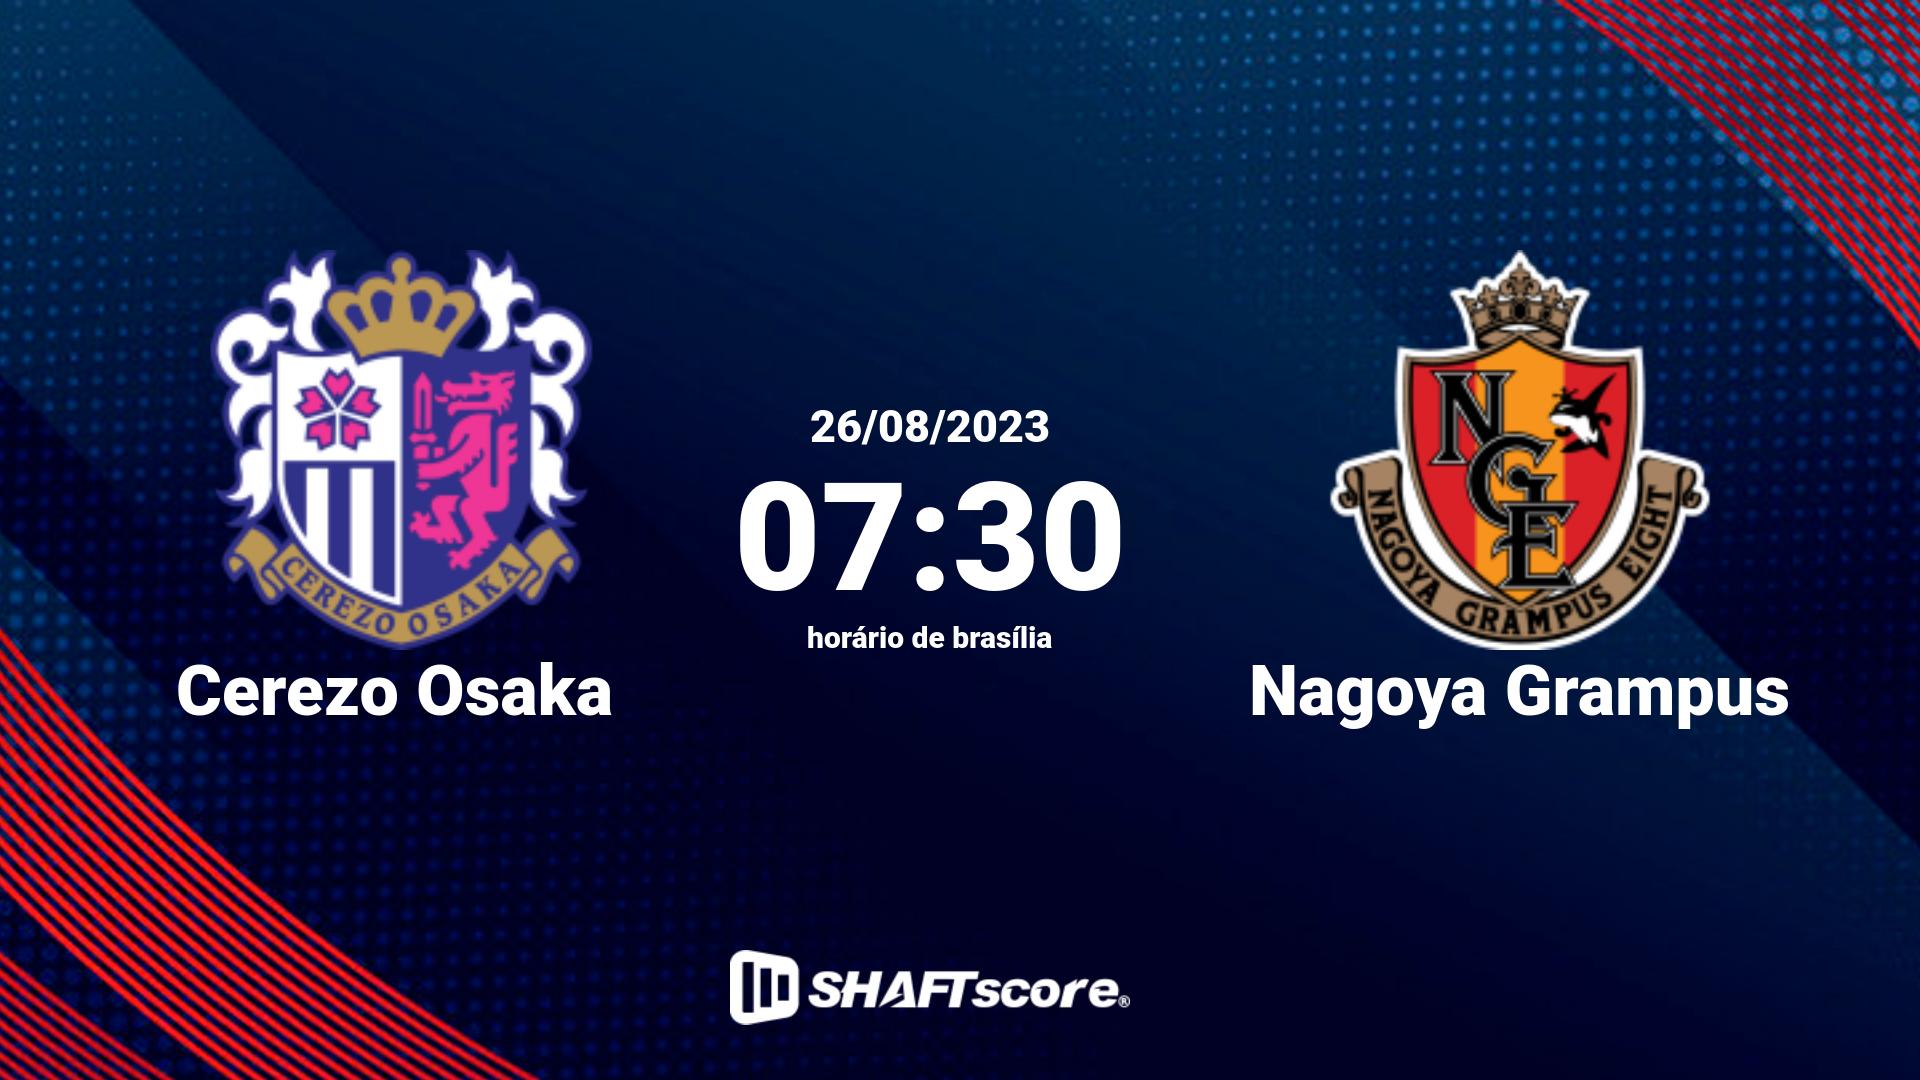 Estatísticas do jogo Cerezo Osaka vs Nagoya Grampus 26.08 07:30